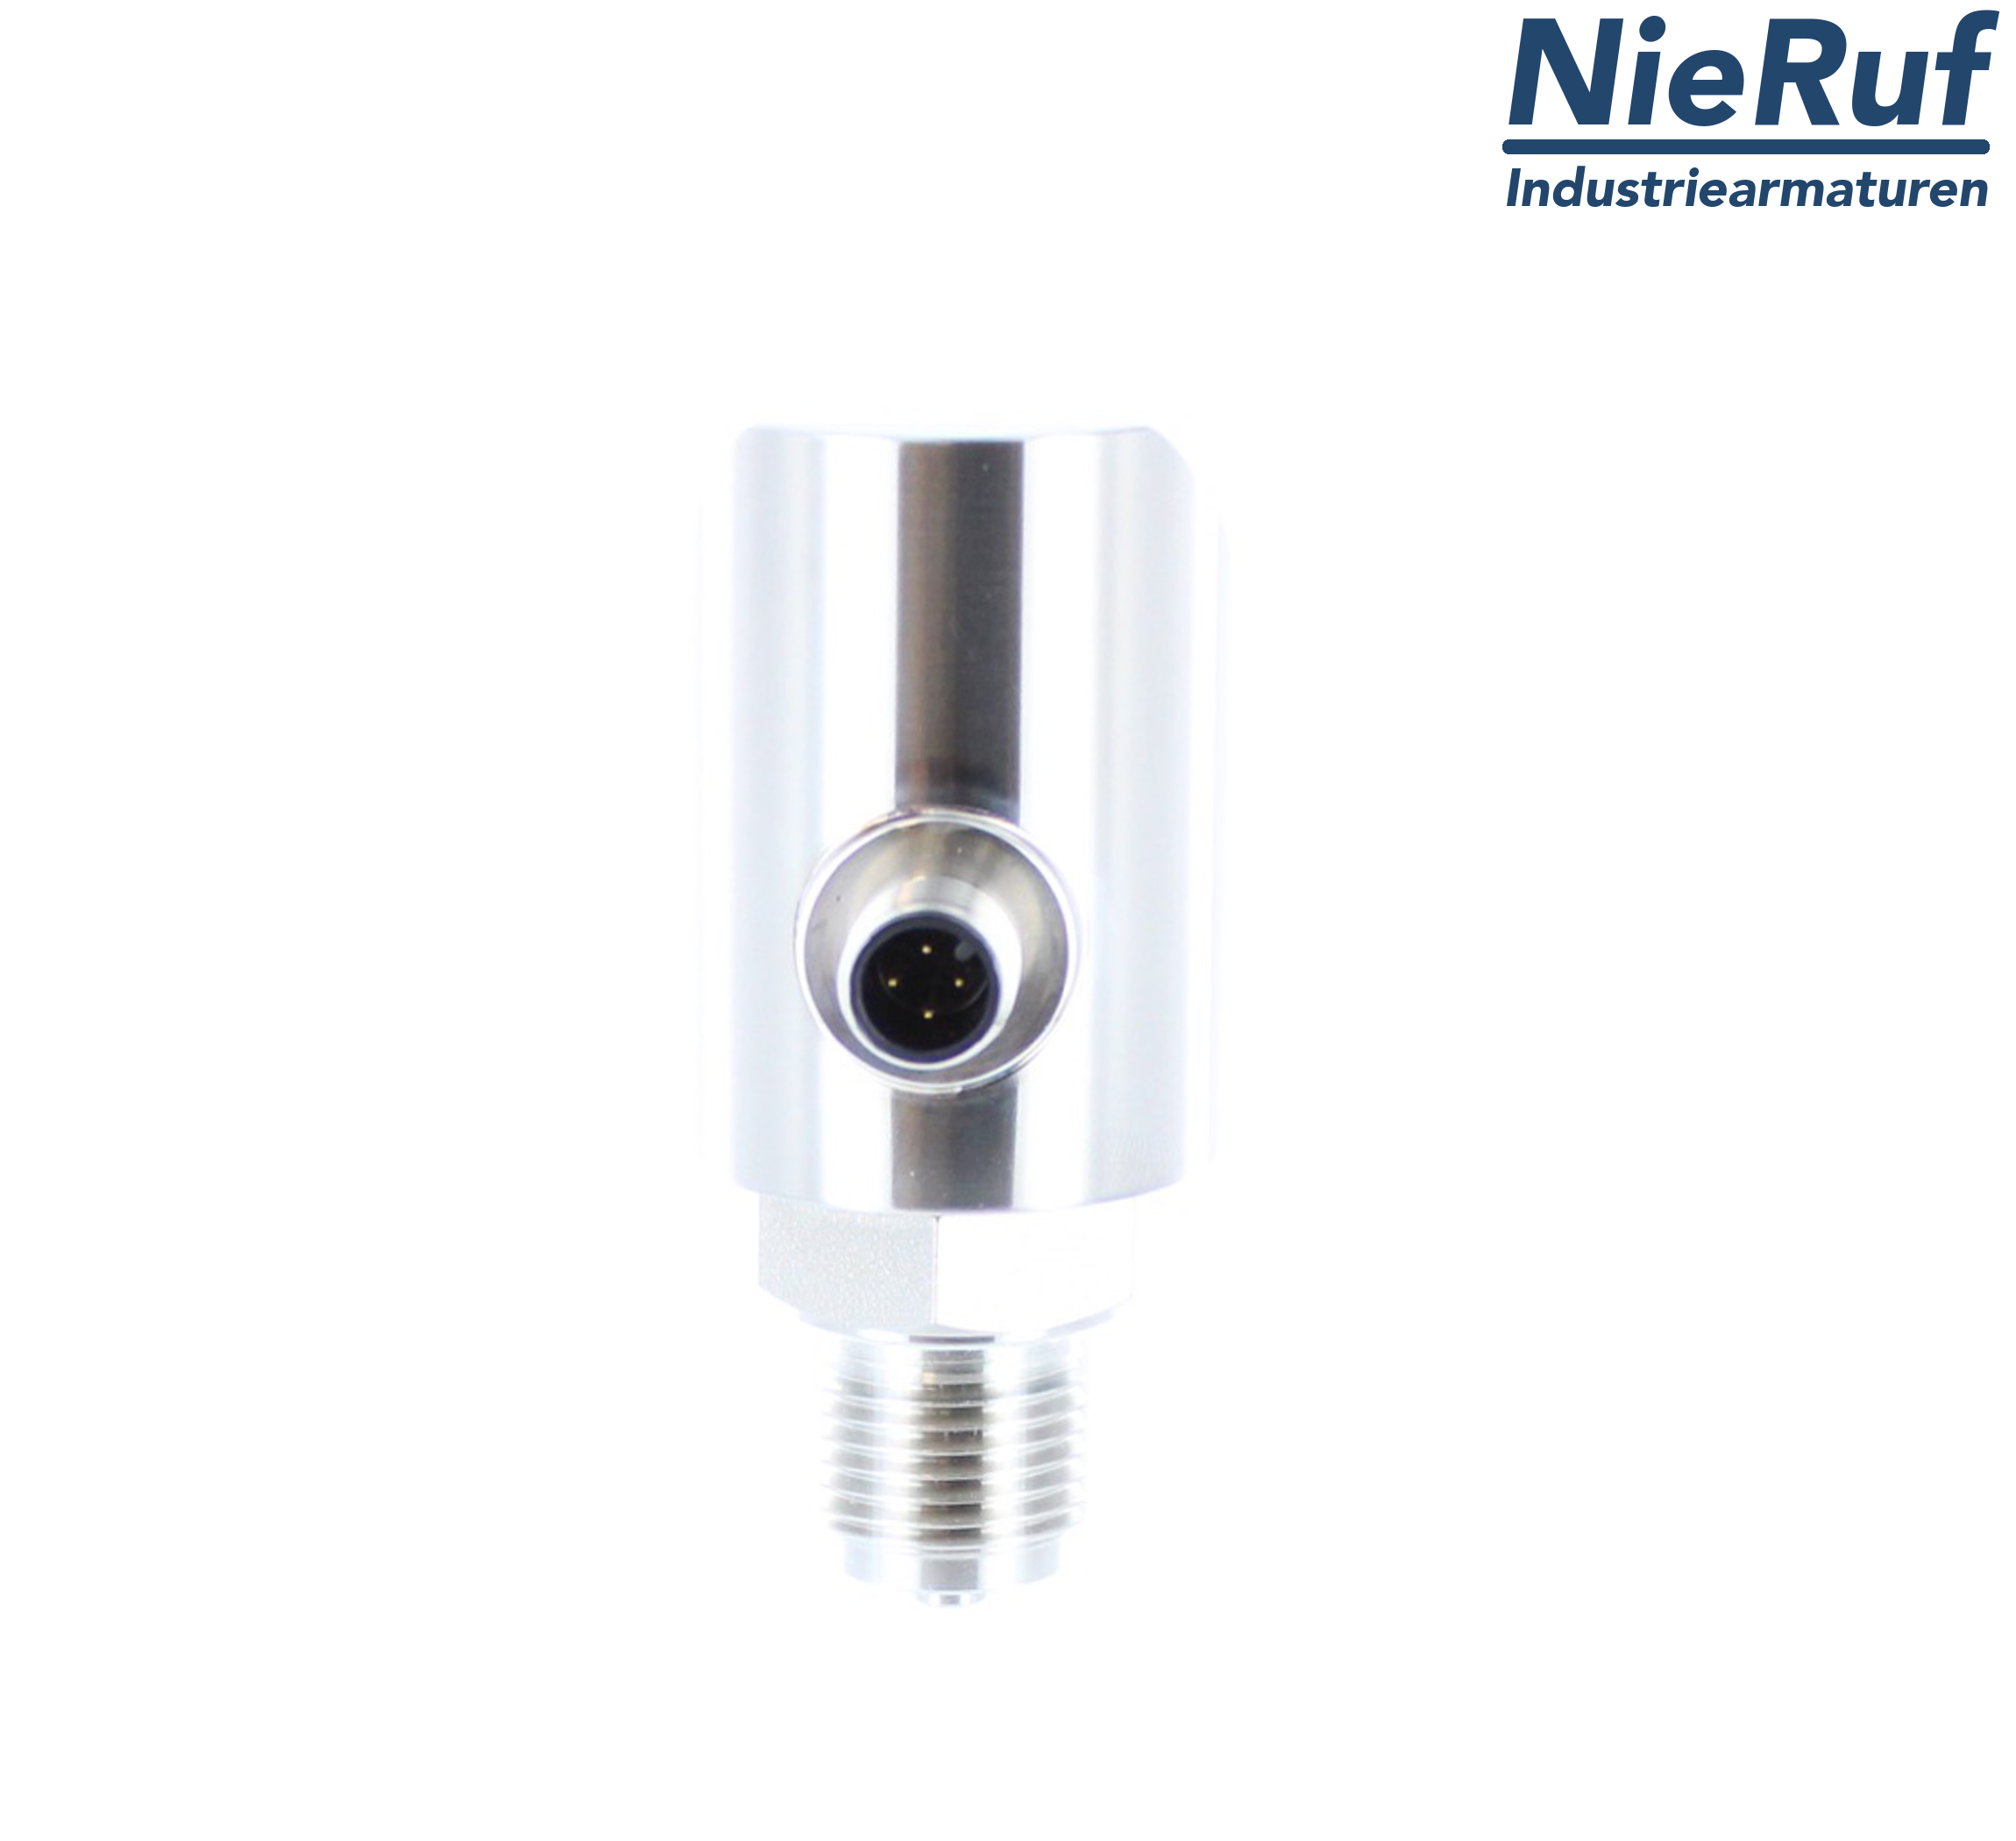 digital pressure sensor G 1/4" B 4-wire: 1xPNP, 1x4 - 20mA, Desina FPM 0,0 - 250,0 bar